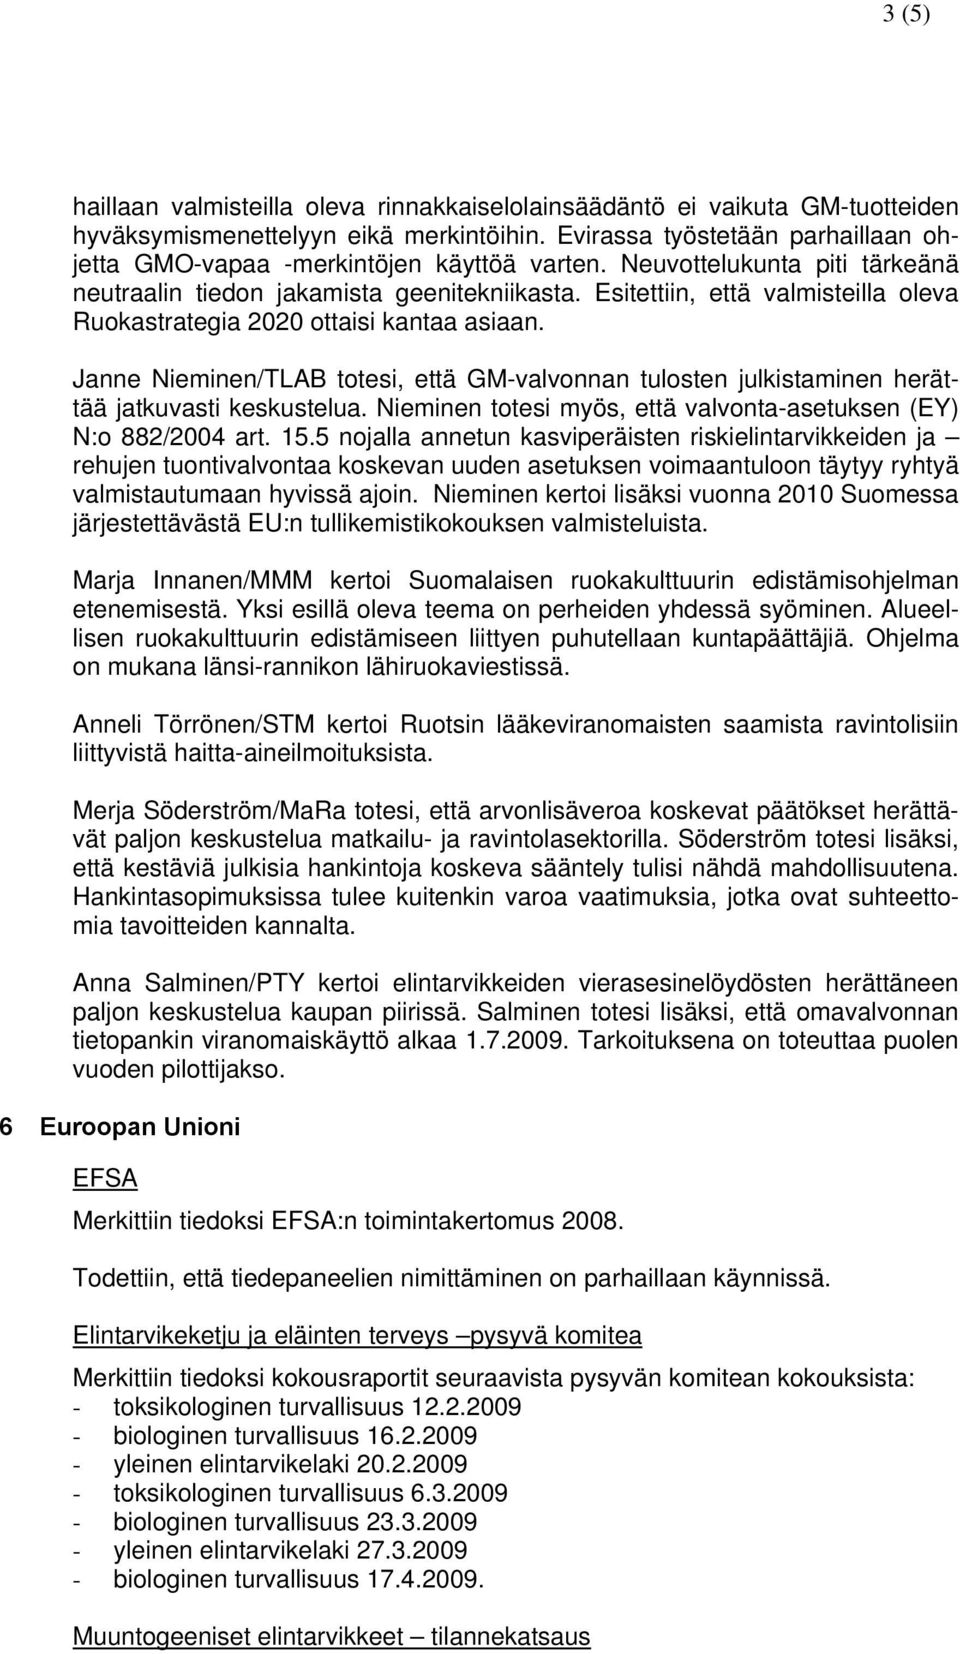 Esitettiin, että valmisteilla oleva Ruokastrategia 2020 ottaisi kantaa asiaan. Janne Nieminen/TLAB totesi, että GM-valvonnan tulosten julkistaminen herättää jatkuvasti keskustelua.